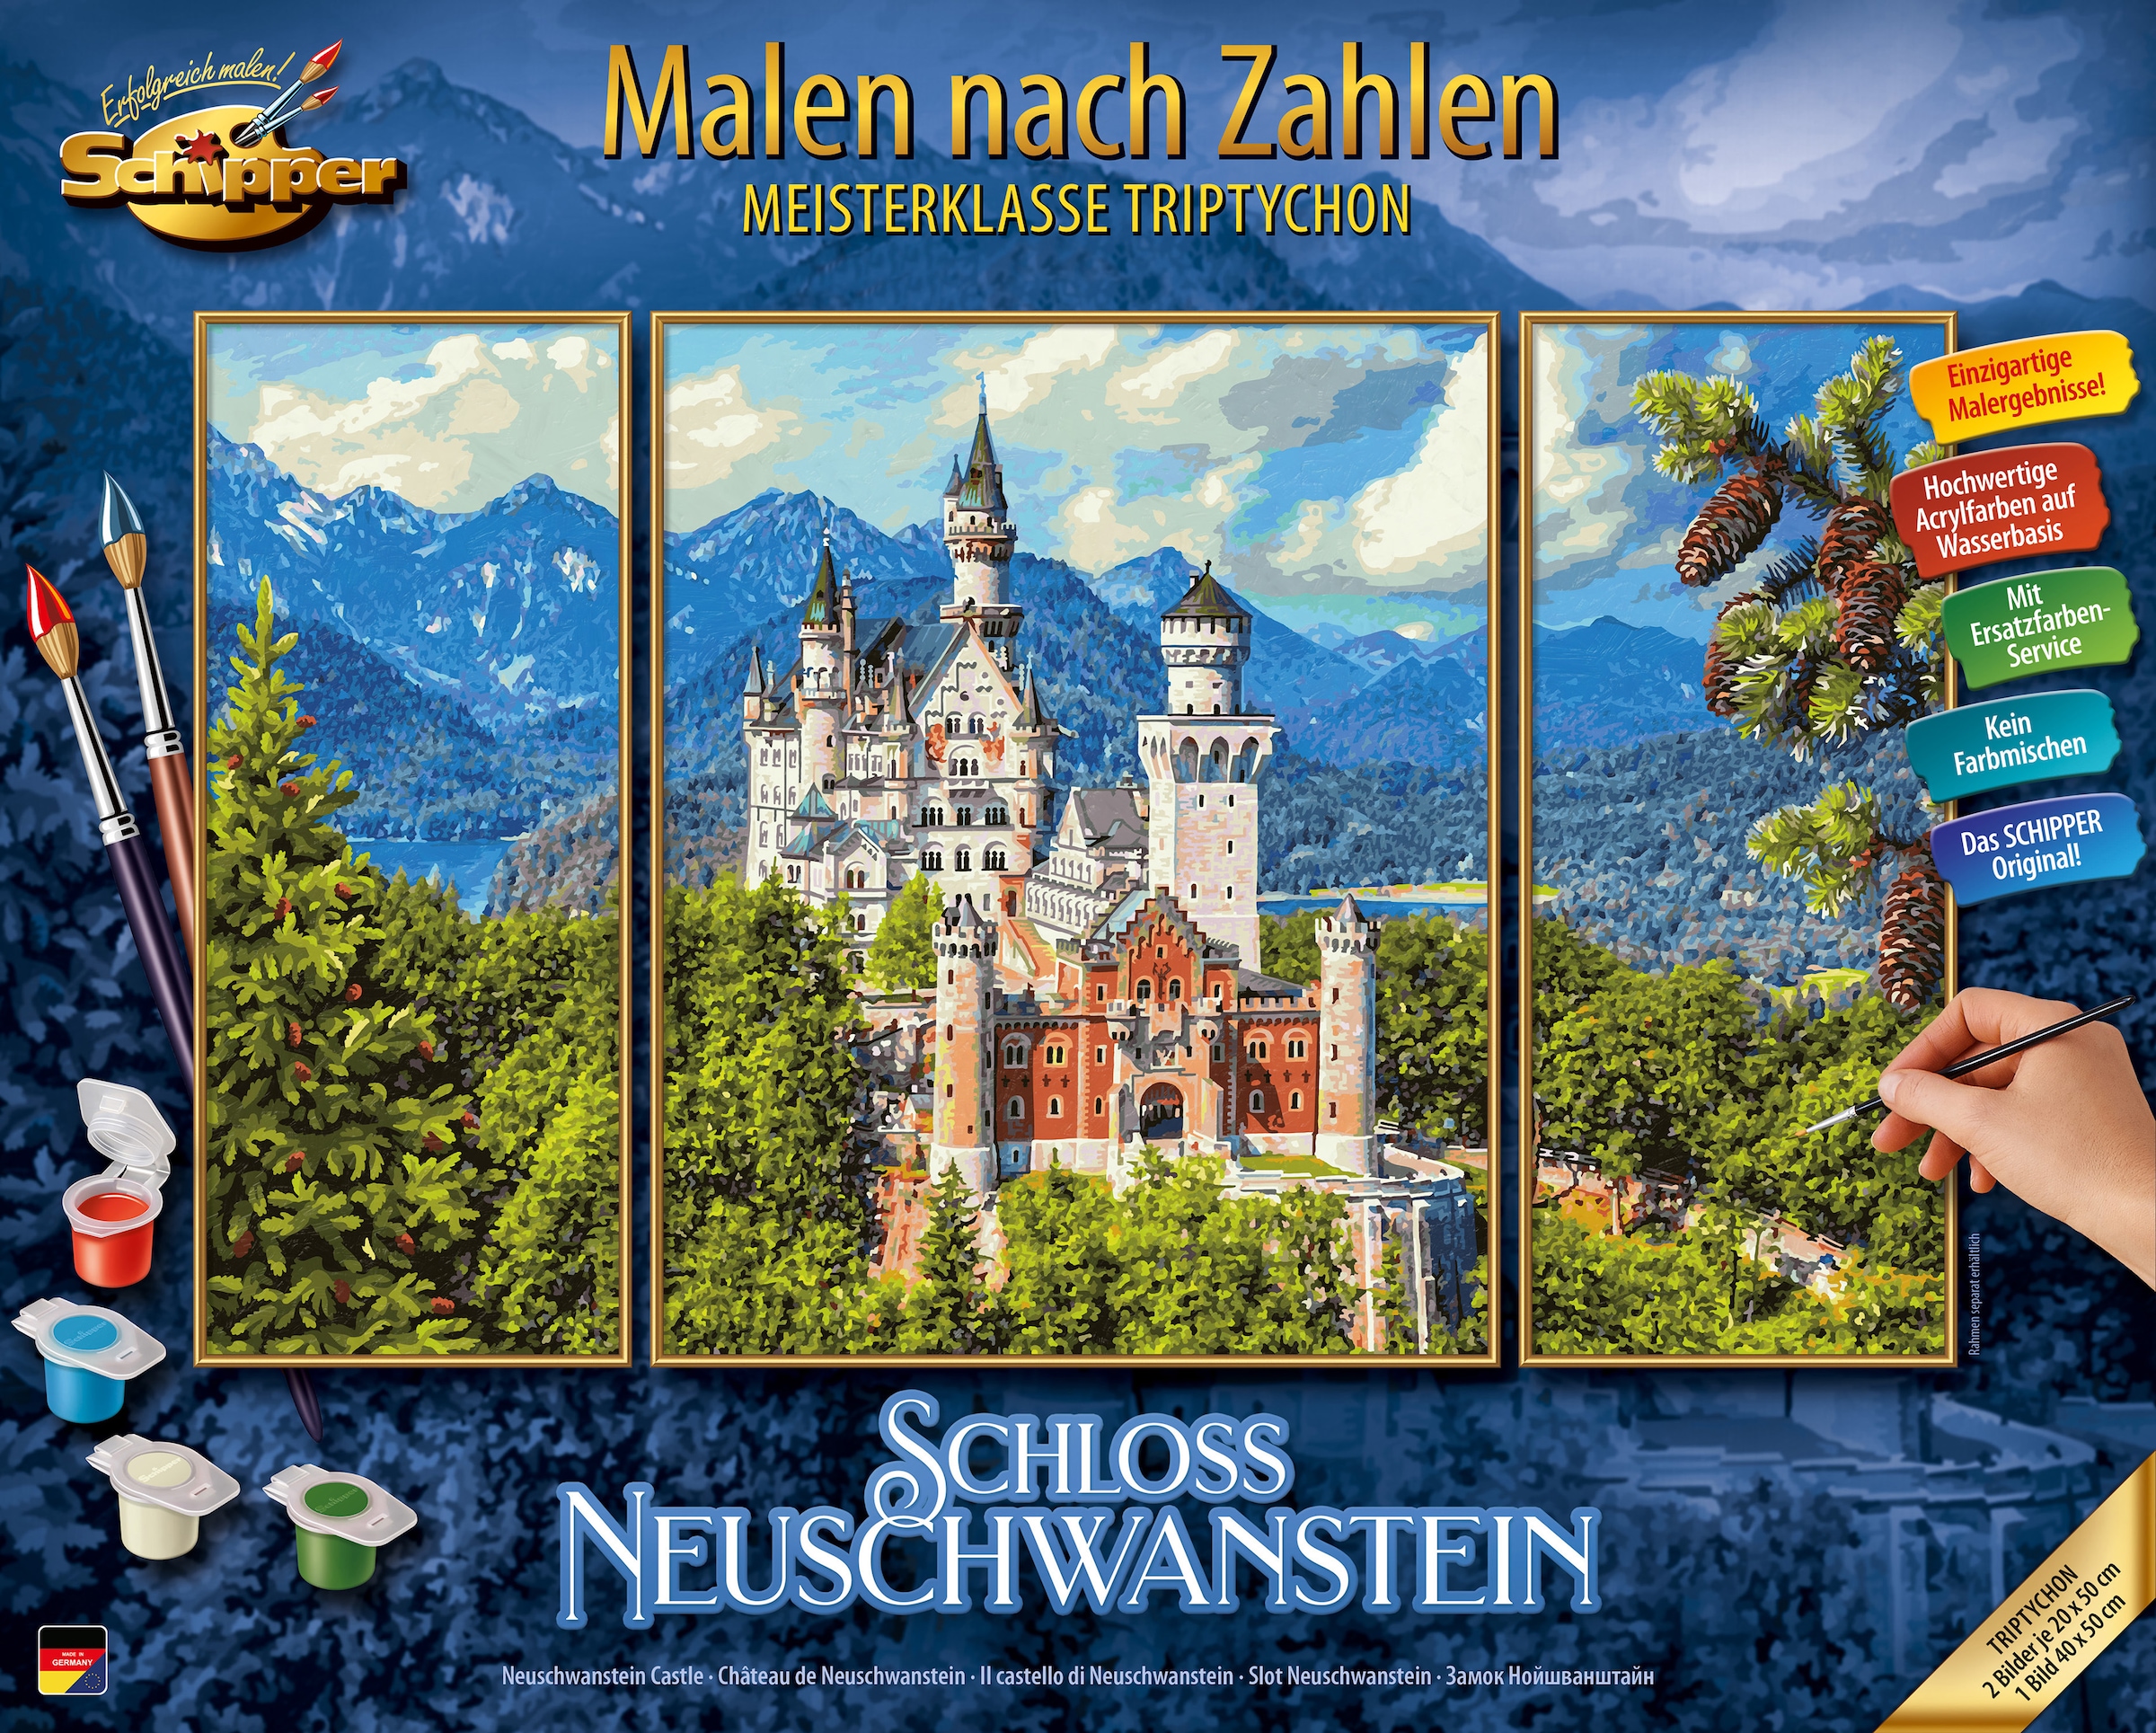 »Meisterklasse Made Schipper Malen - Zahlen Neuschwanstein«, Schloss in bei Germany nach Triptychon